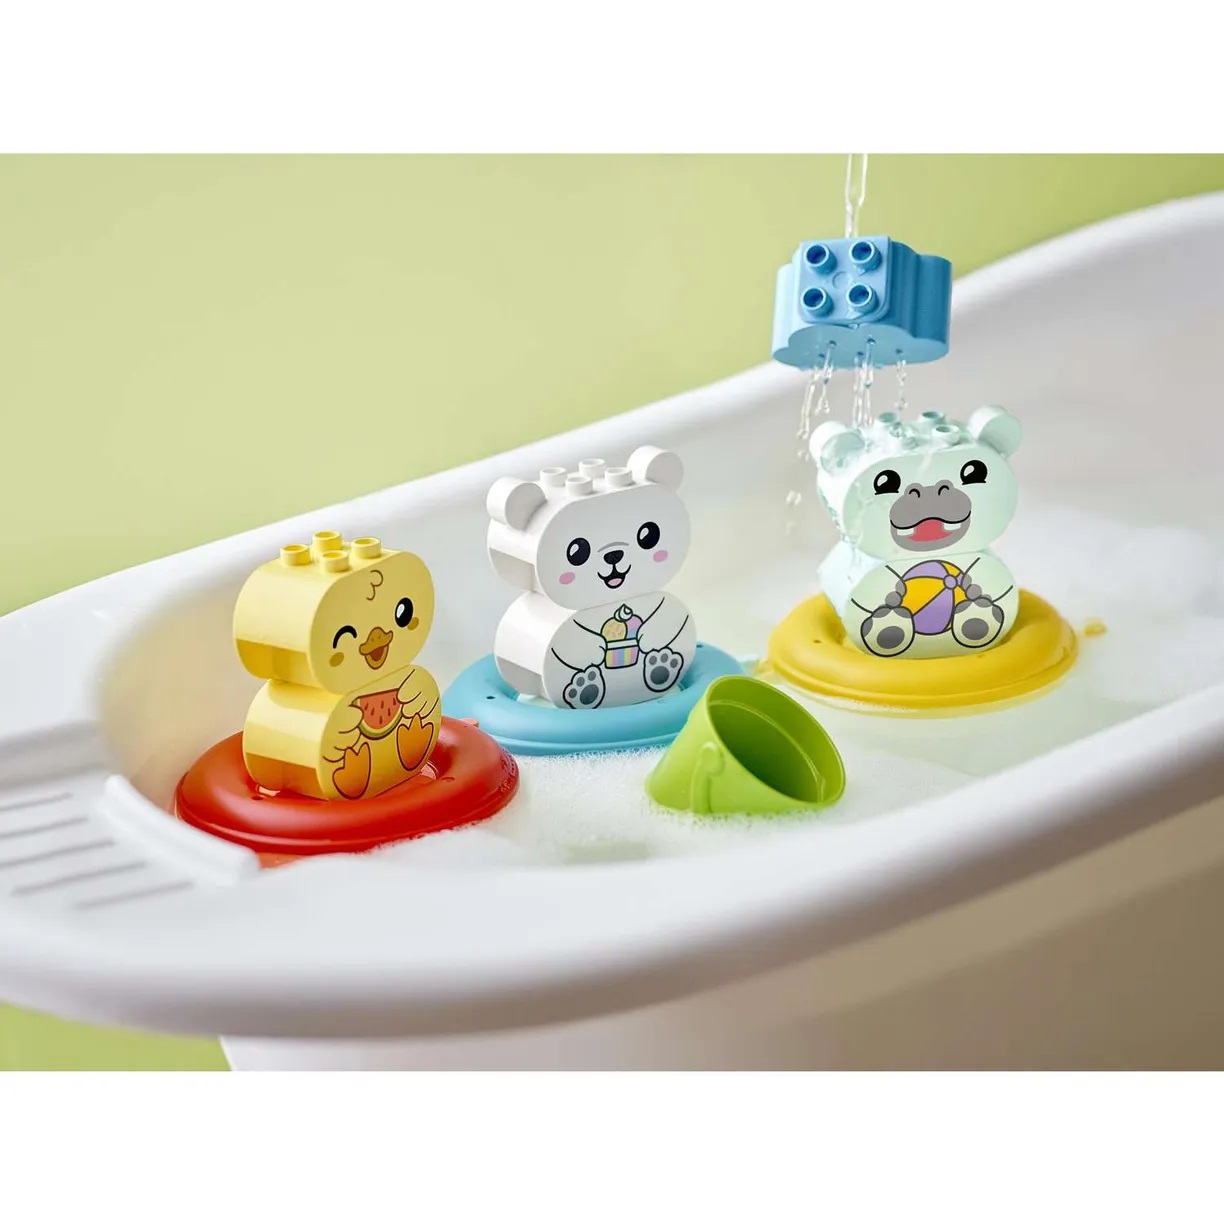 Lego Duplo 10965 Приключения в ванной: плавучий поезд для зверей